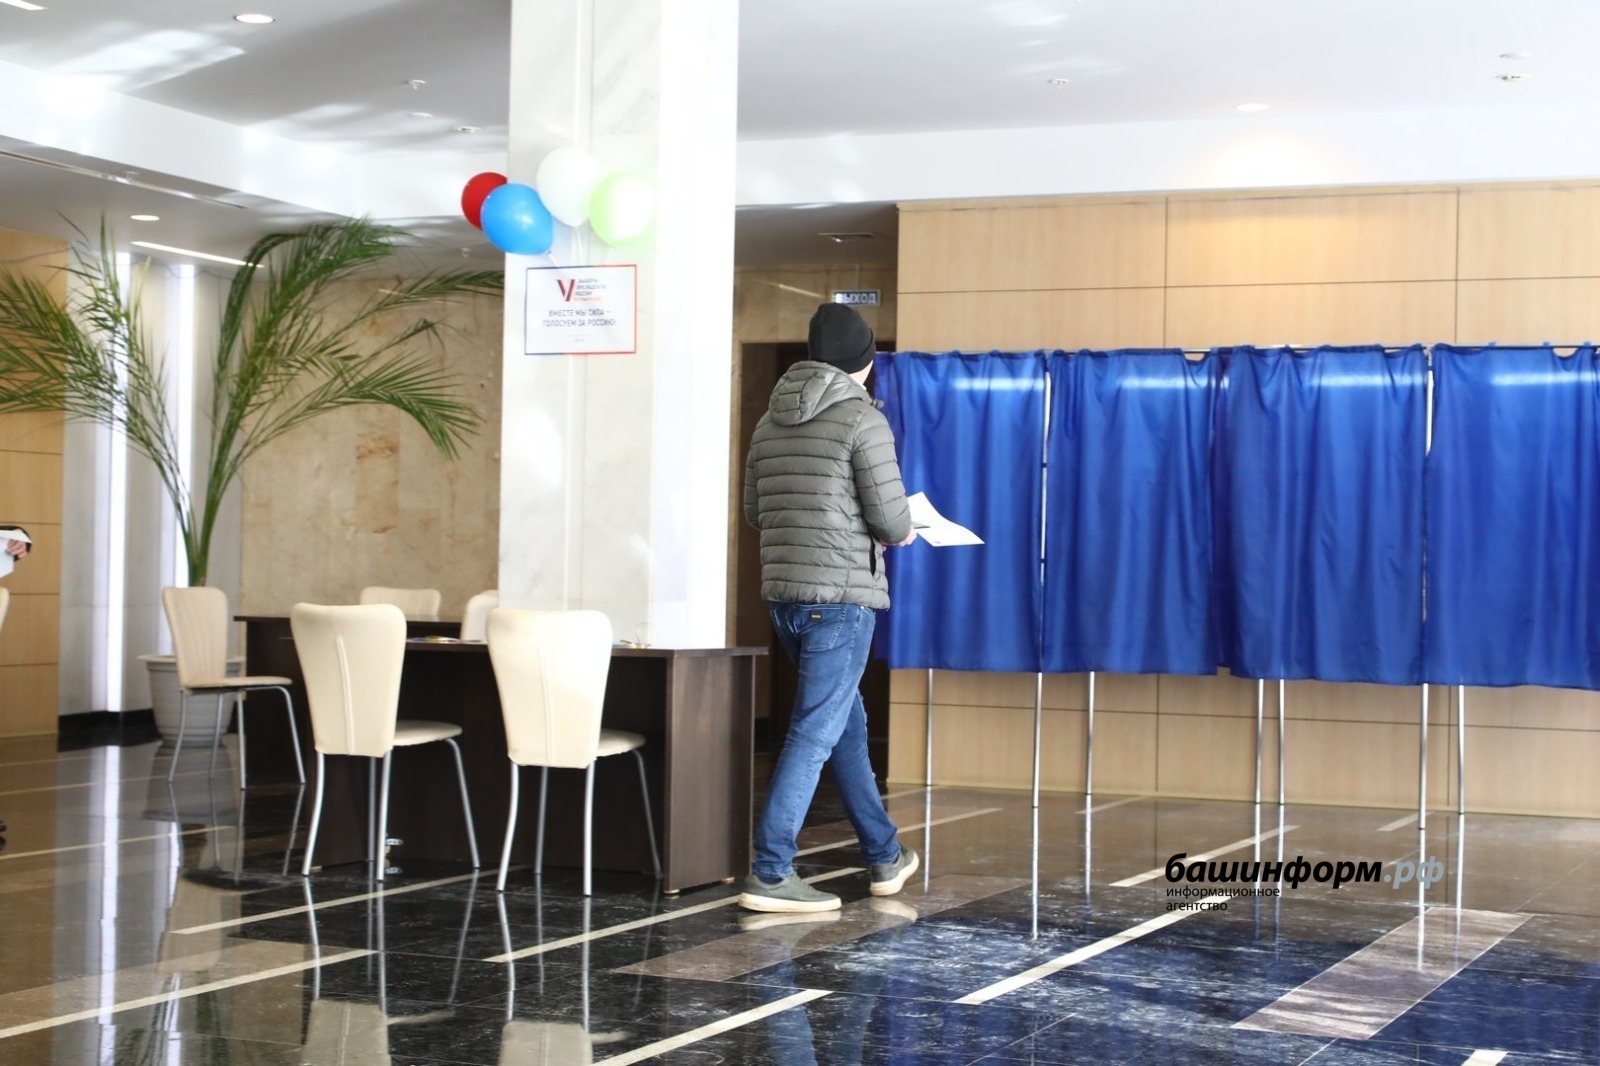 Начался третий день голосования на выборах Президента РФ в Башкирии